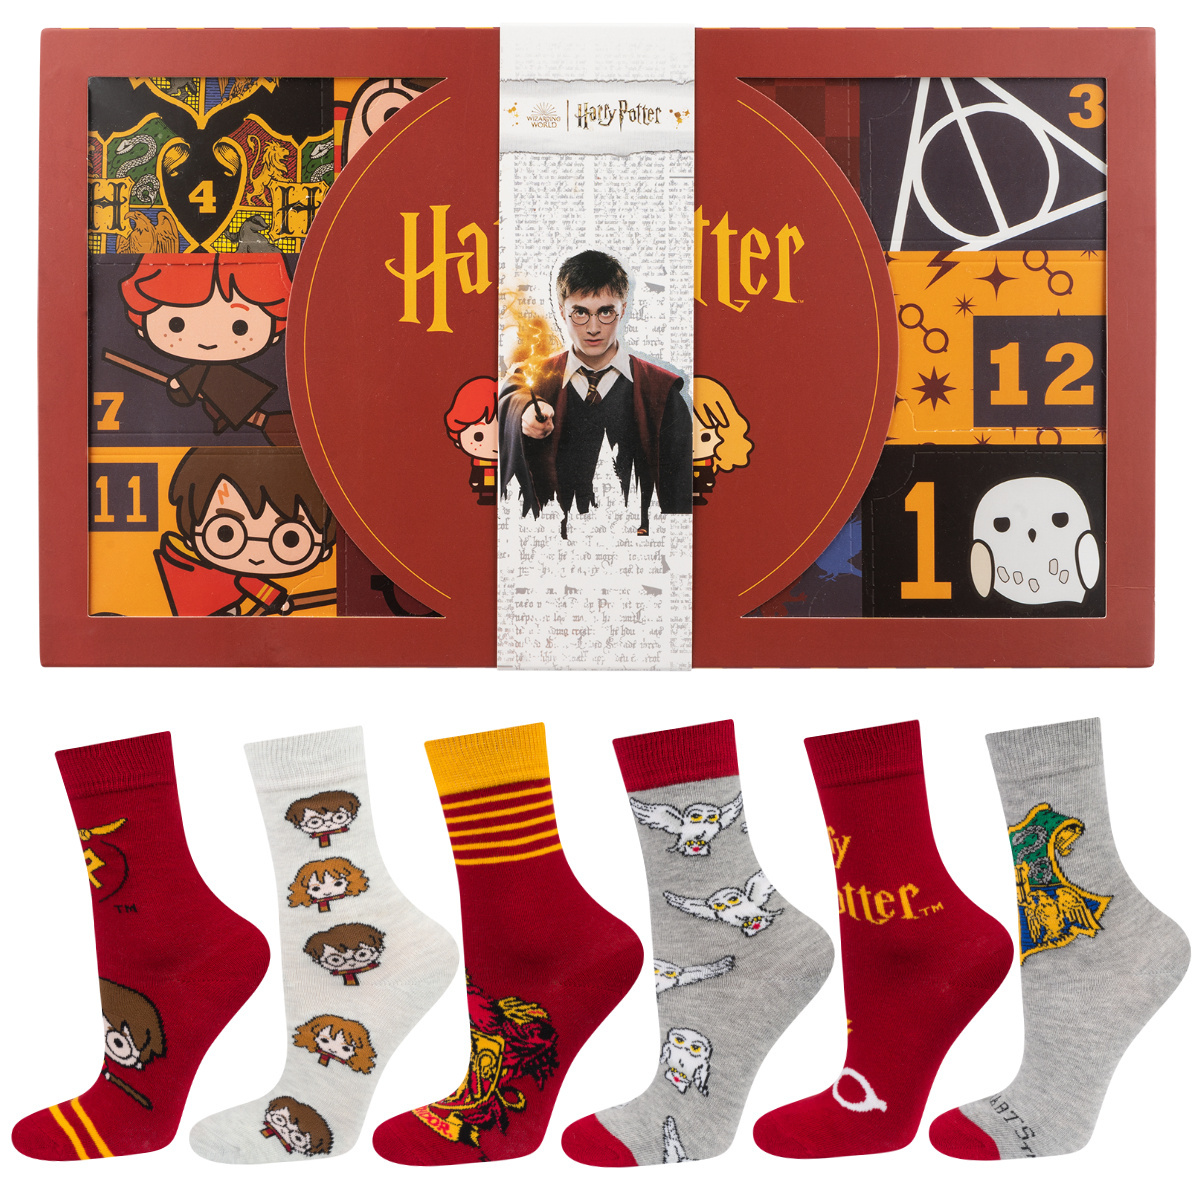 Calendrier de l'Avent Harry Potter, idée cadeau pour elle, le jour de la  saint nicolas, Lot de 6 chaussettes SOXO pour femme - 39,99 €